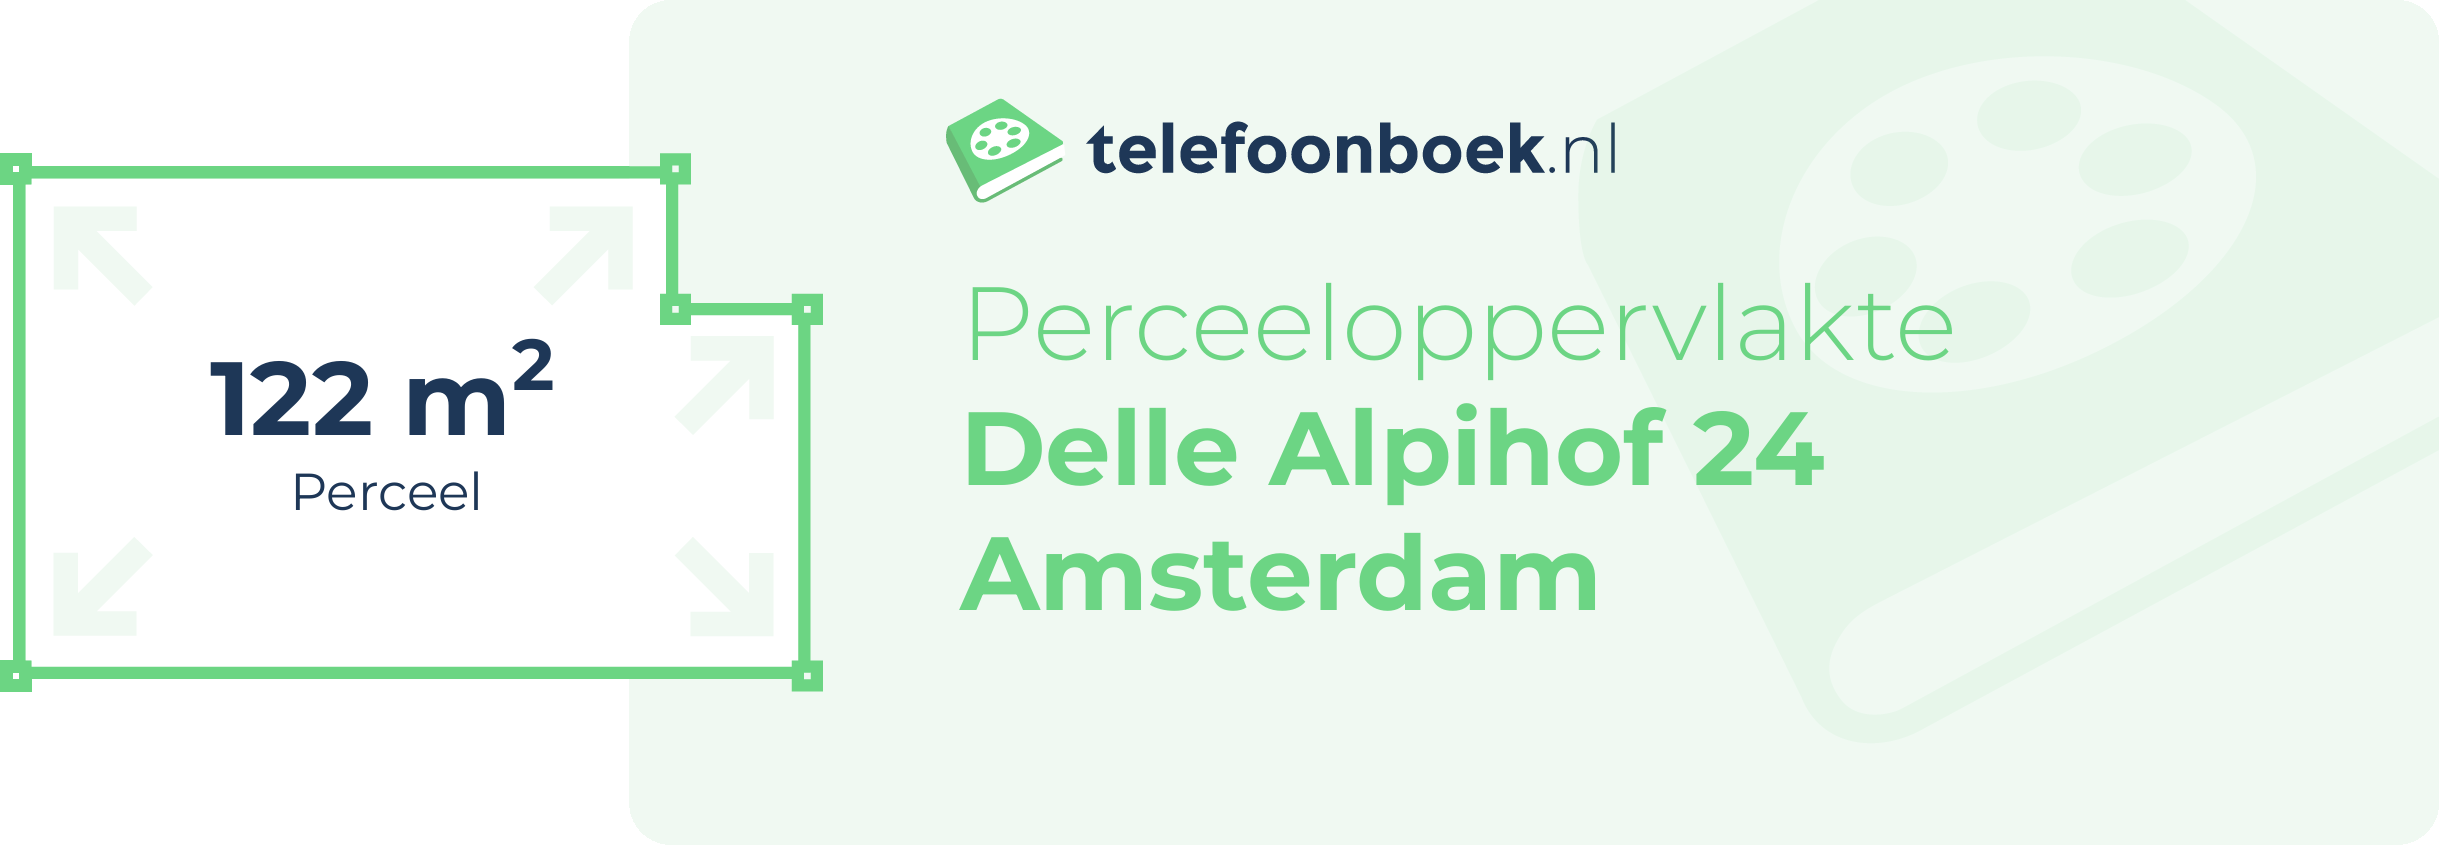 Perceeloppervlakte Delle Alpihof 24 Amsterdam